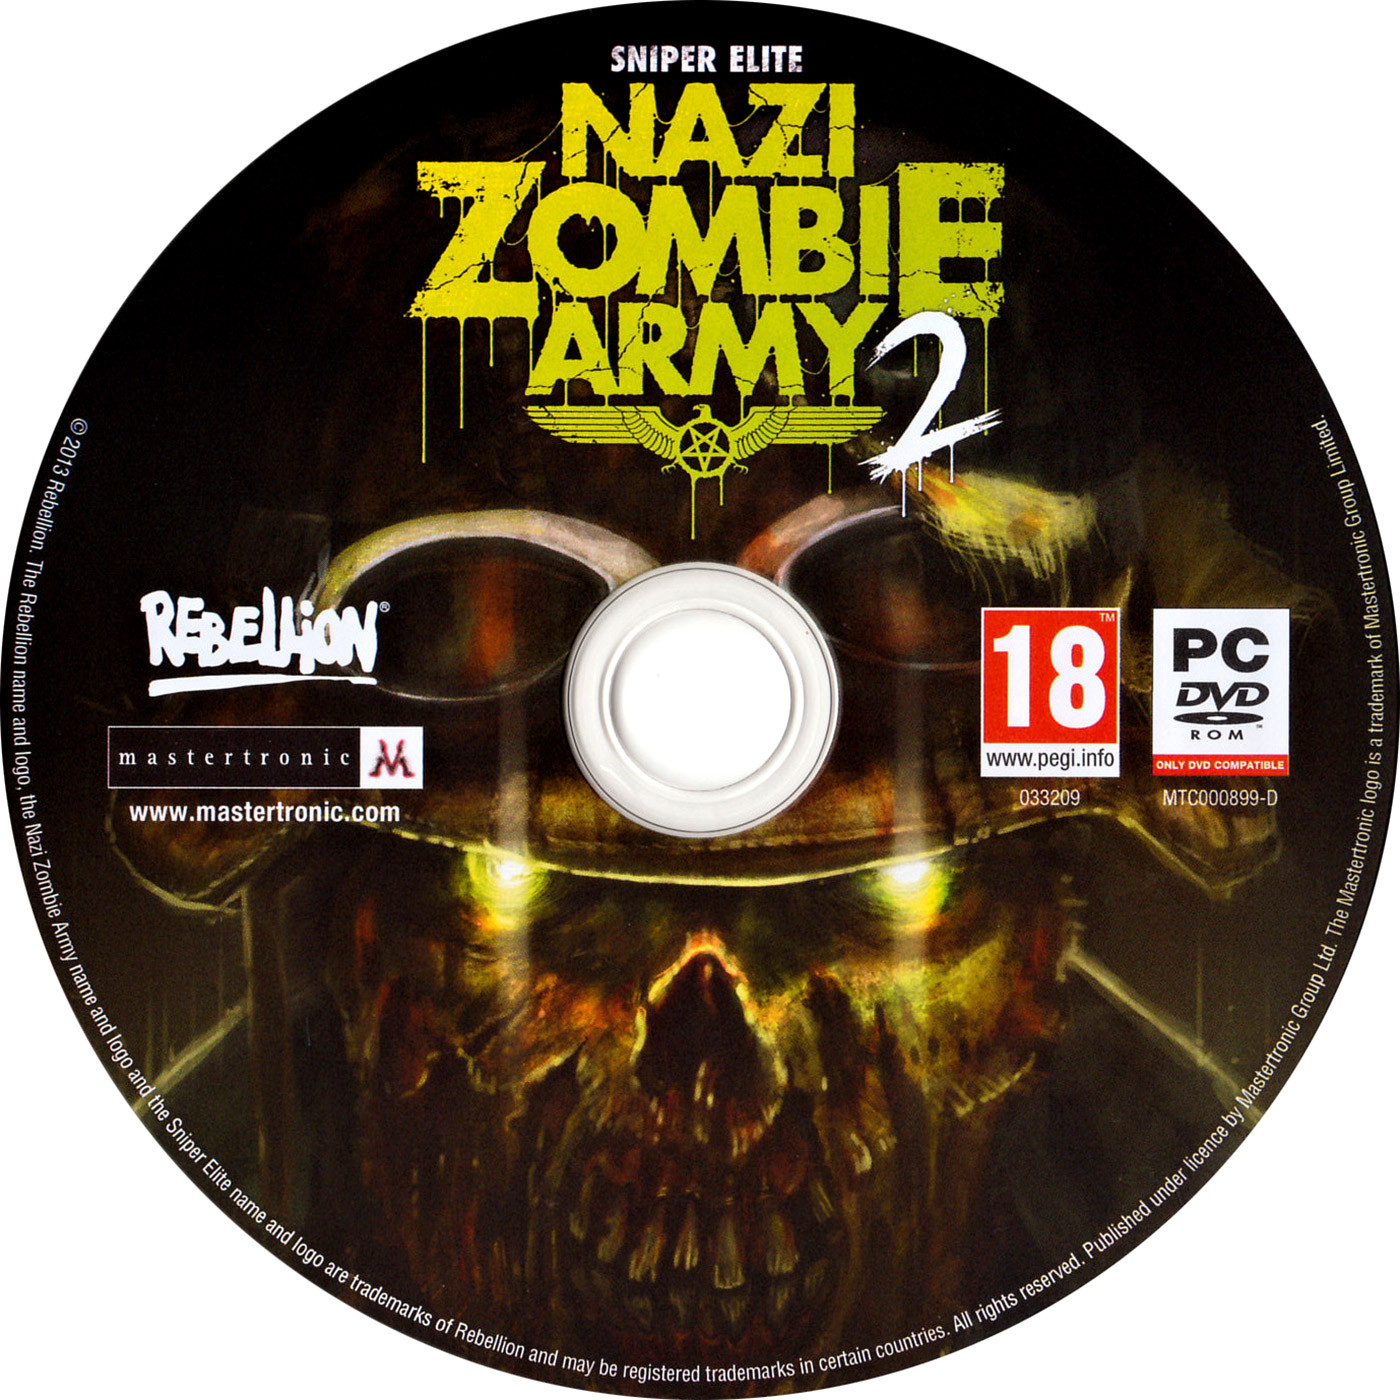 Sniper Elite: Nazi Zombie Army 2 - CD obal